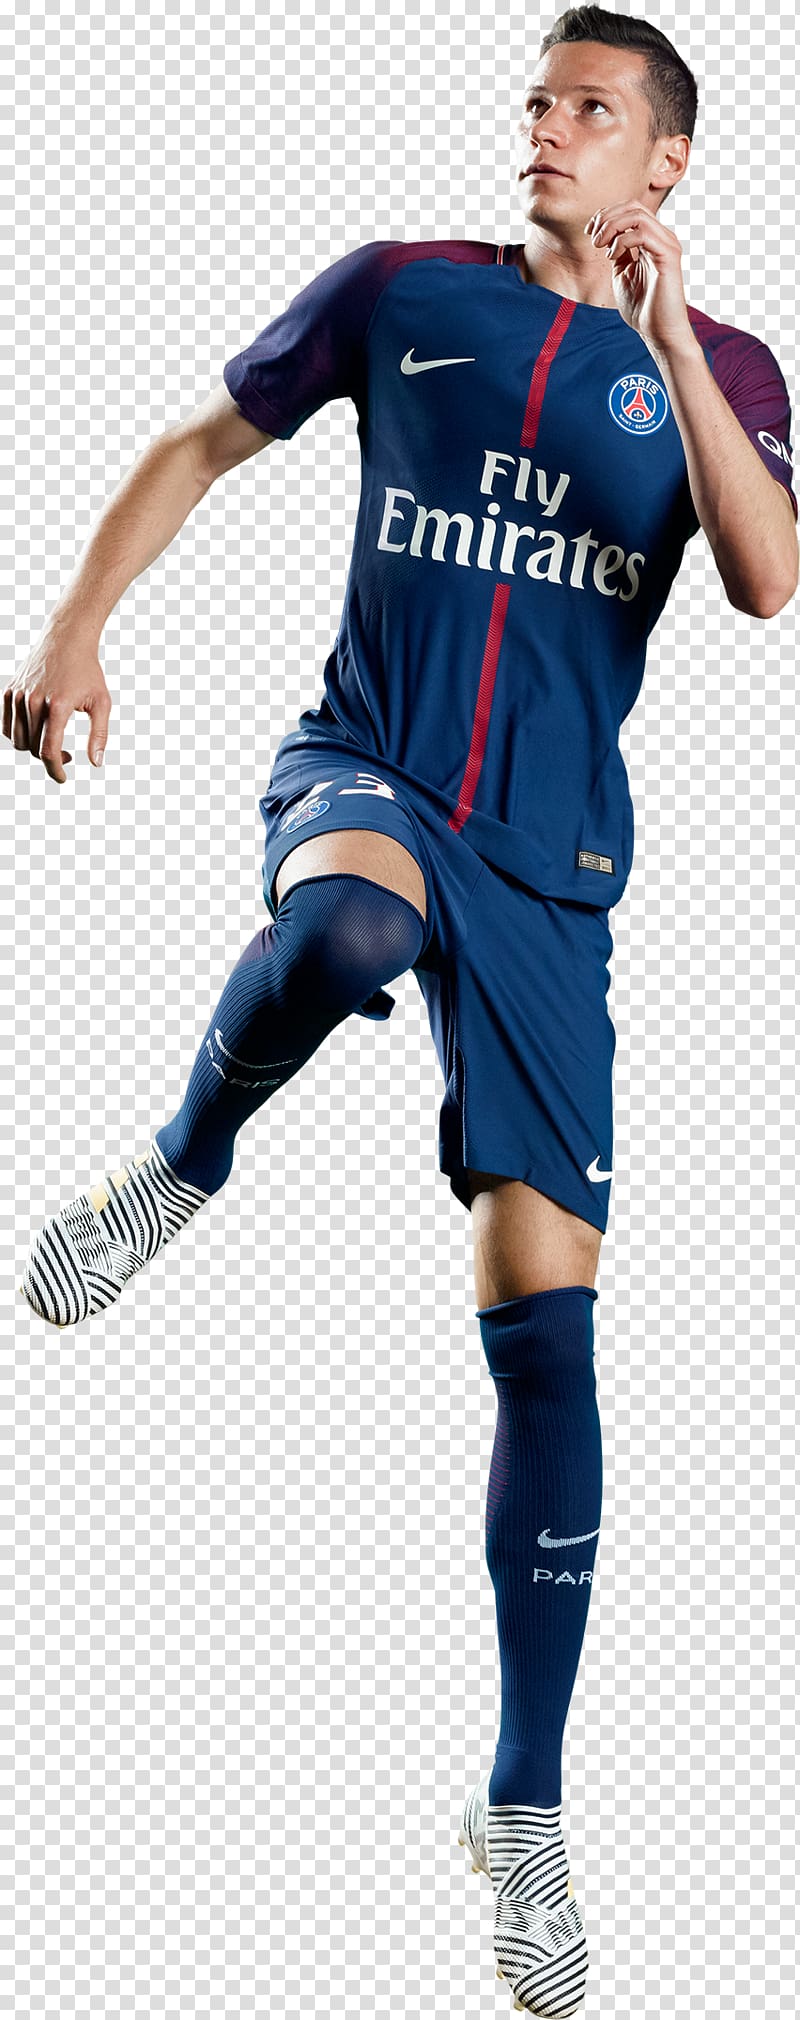 Julian Draxler Paris Saint-Germain F.C. Football player Team sport, psg ...